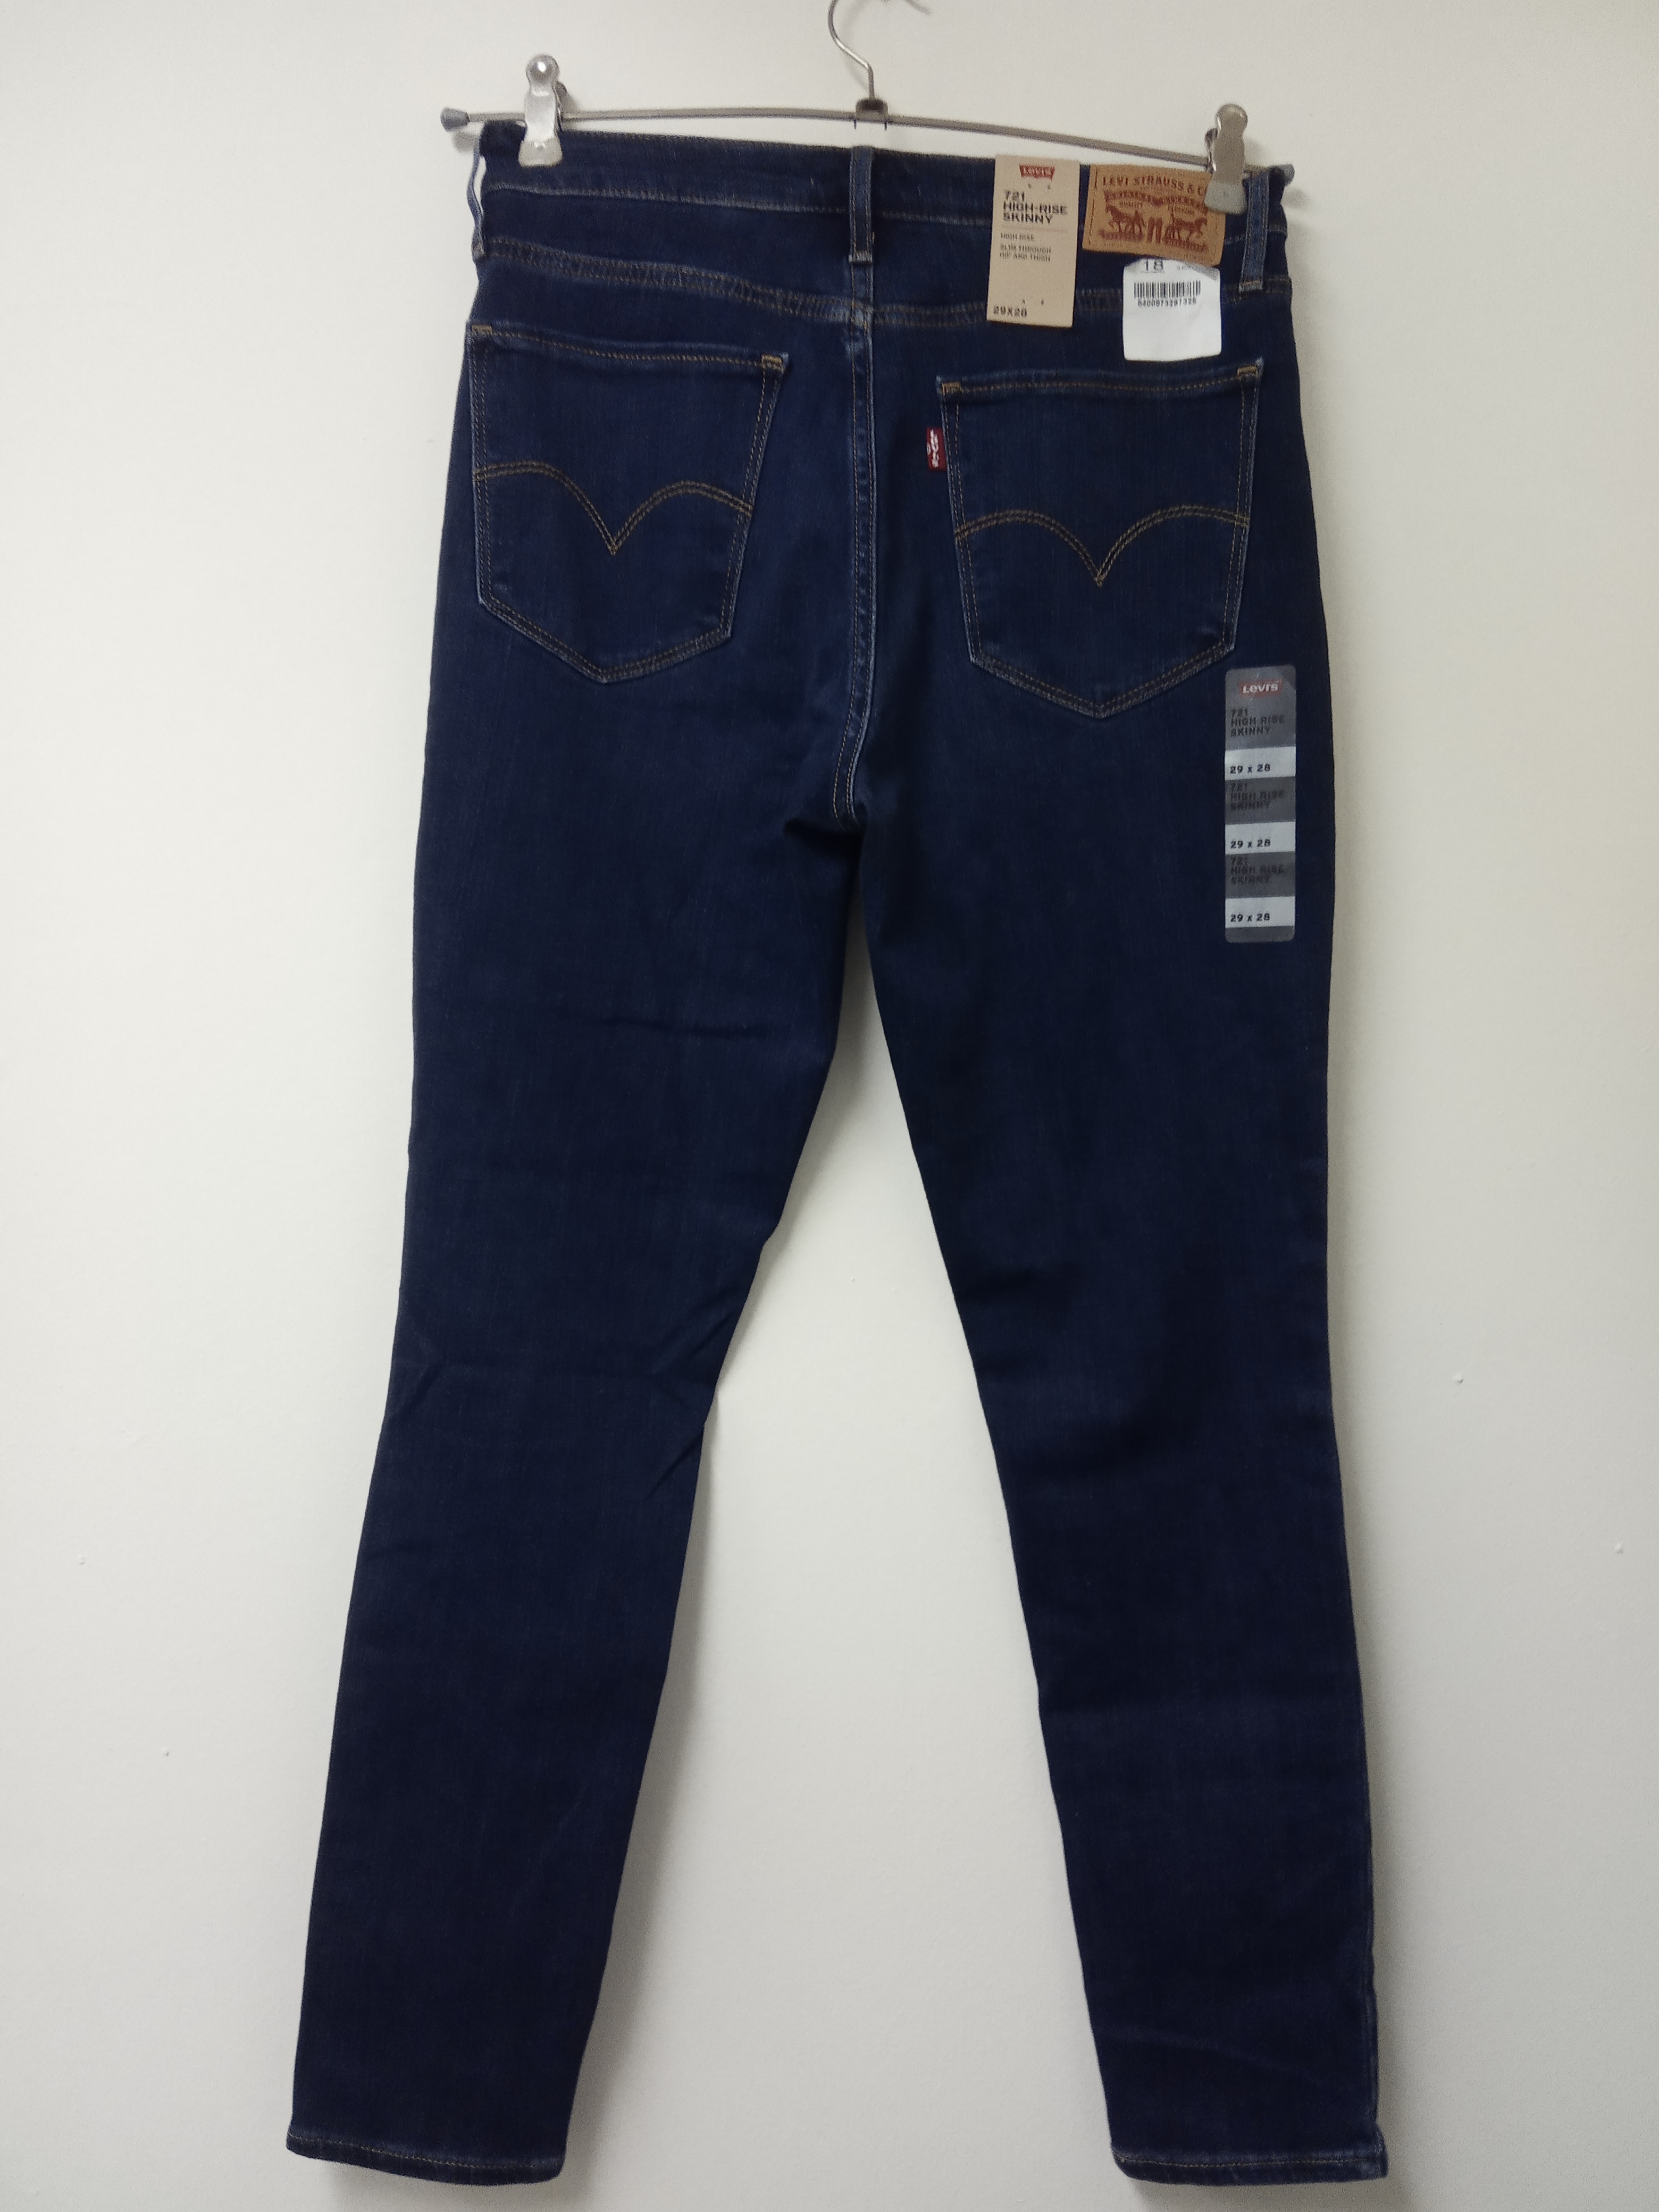 תמונה 3 ,ג'ינס ליווייס מידה 29 חדש למכירה בתל אביב ביגוד ואביזרים  ג'ינסים ומכנסיים